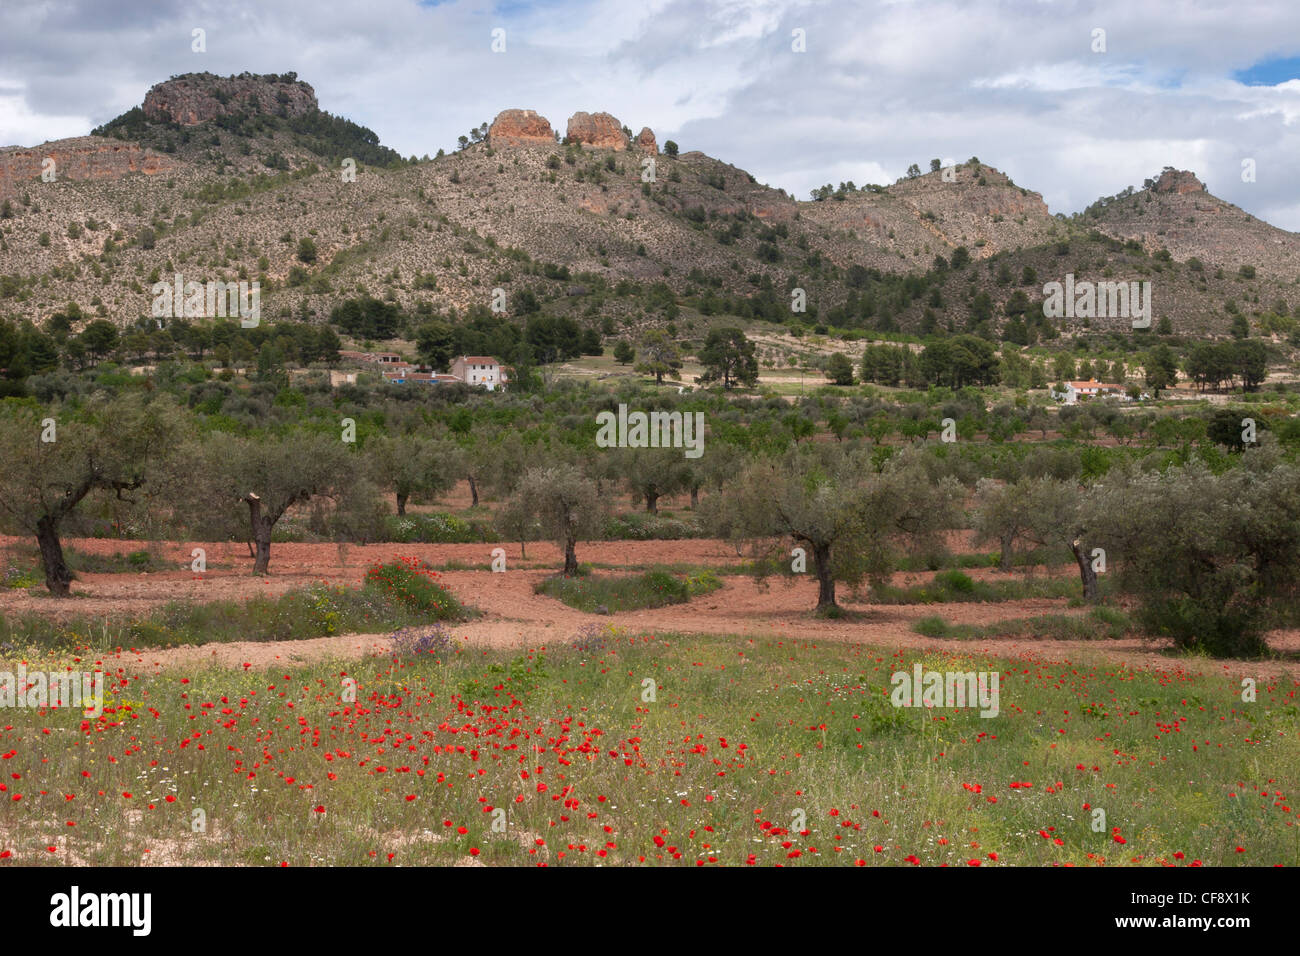 Alberi di ulivo e di papavero cresce nella Sierra de Seguras. Foto Stock